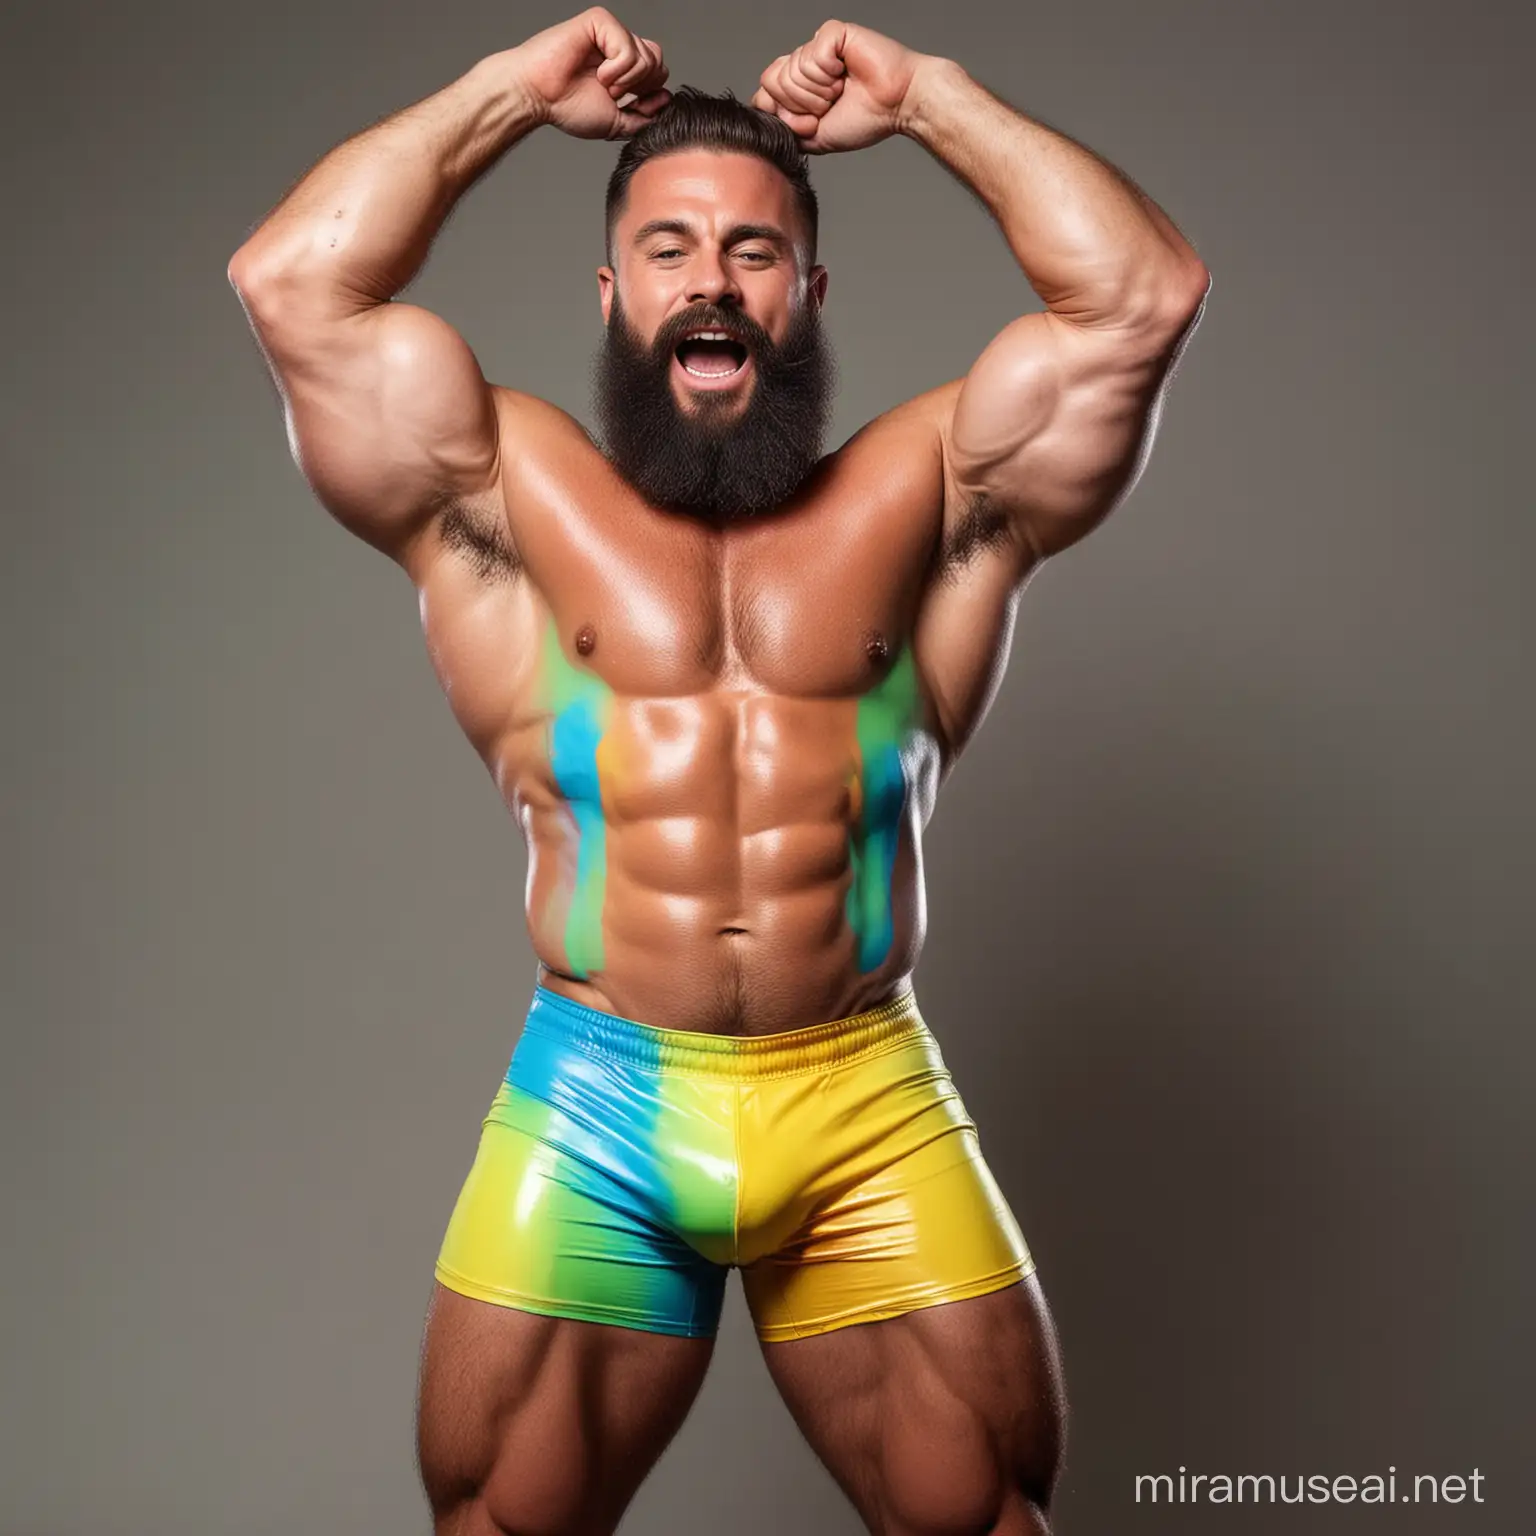 Muscular Bodybuilder Flexing Under RainbowColored GlowintheDark Paints